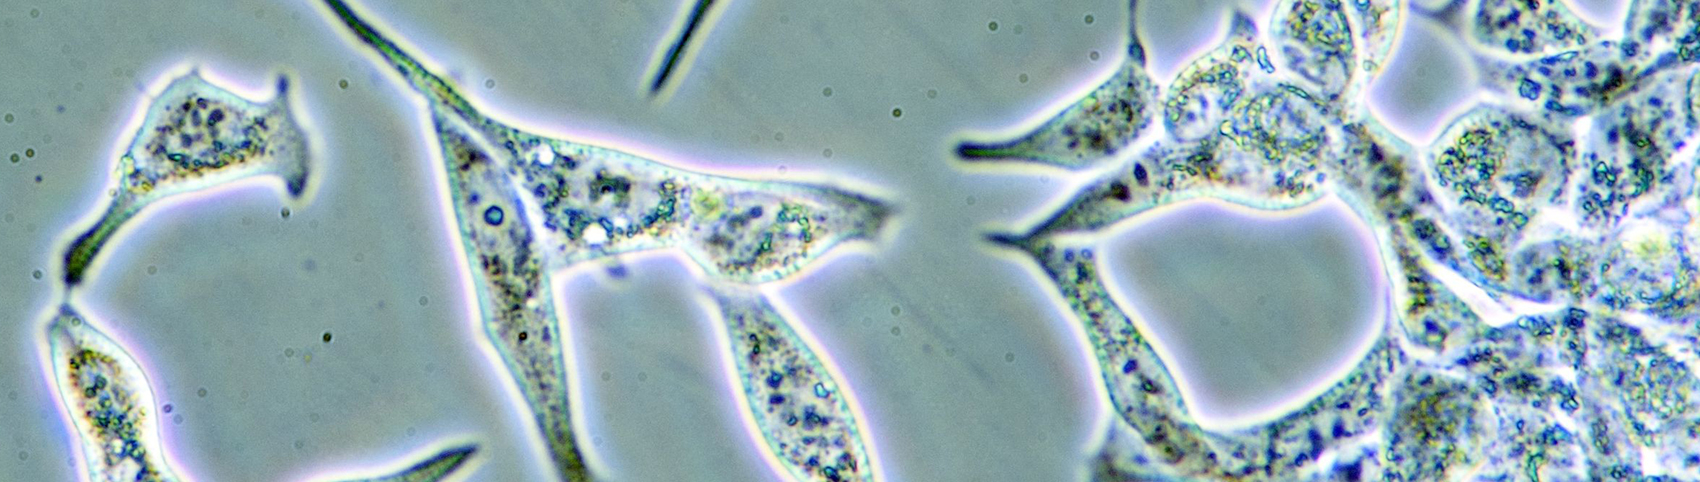 Mikroskopische Aufnahme von Zellen